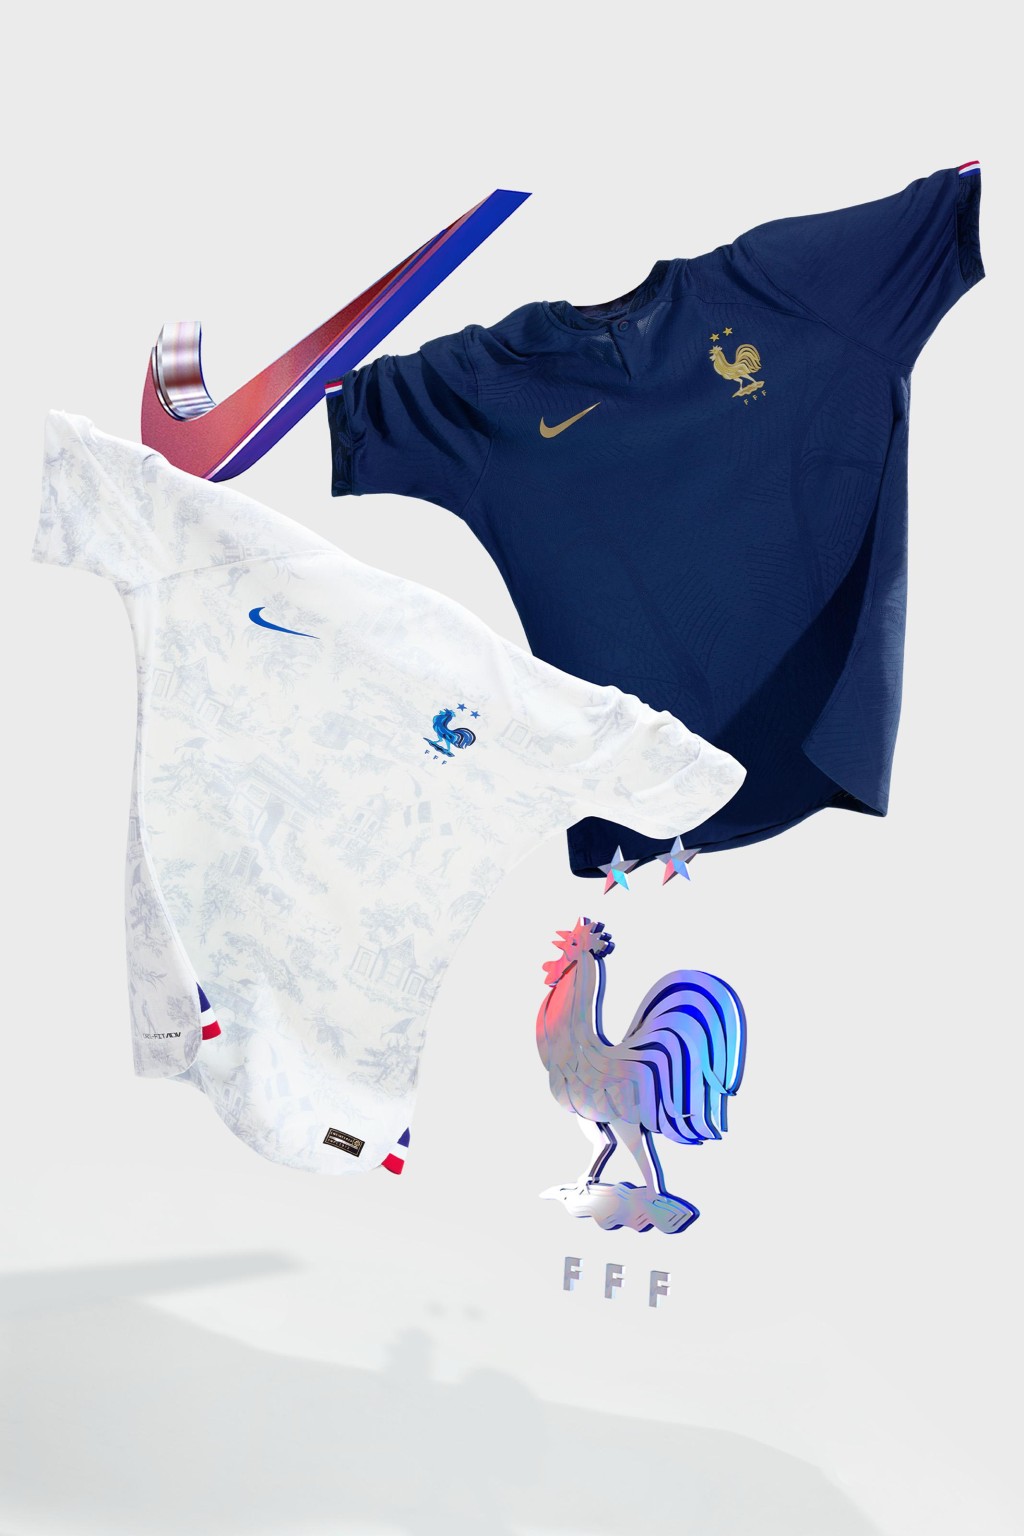 ６）法國 / 主場球衣： 法國今屆於世界盃力爭衛冕，主場球衣則以簡潔風格為主調，球衣的橡樹葉和橄欖枝圖案代表著力量、團結與和平。經典的法式設計元素包括袖口的三色圖案，以及配以金色徽章，簡約卻不失華麗。Nike圖片